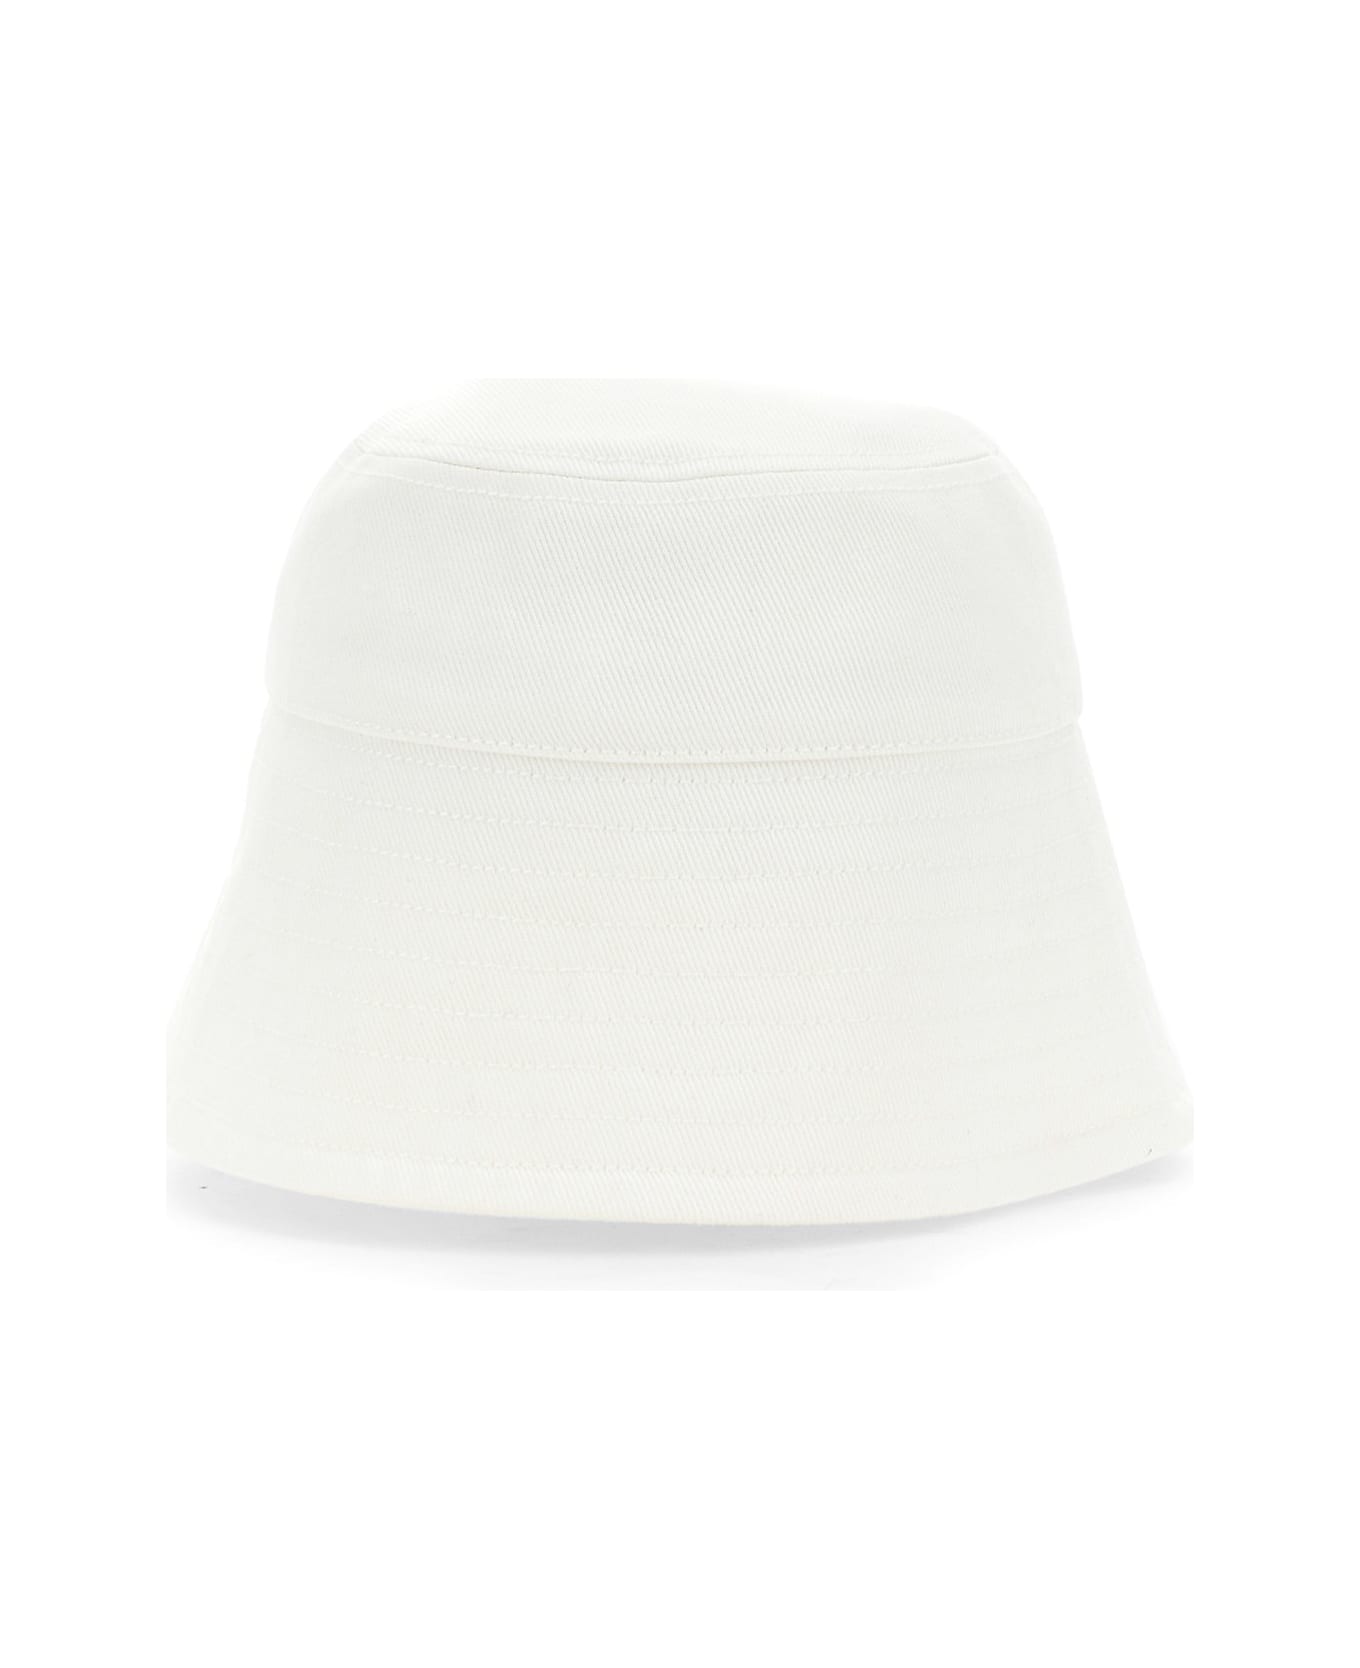 Patou Bucket Hat - 001W 帽子